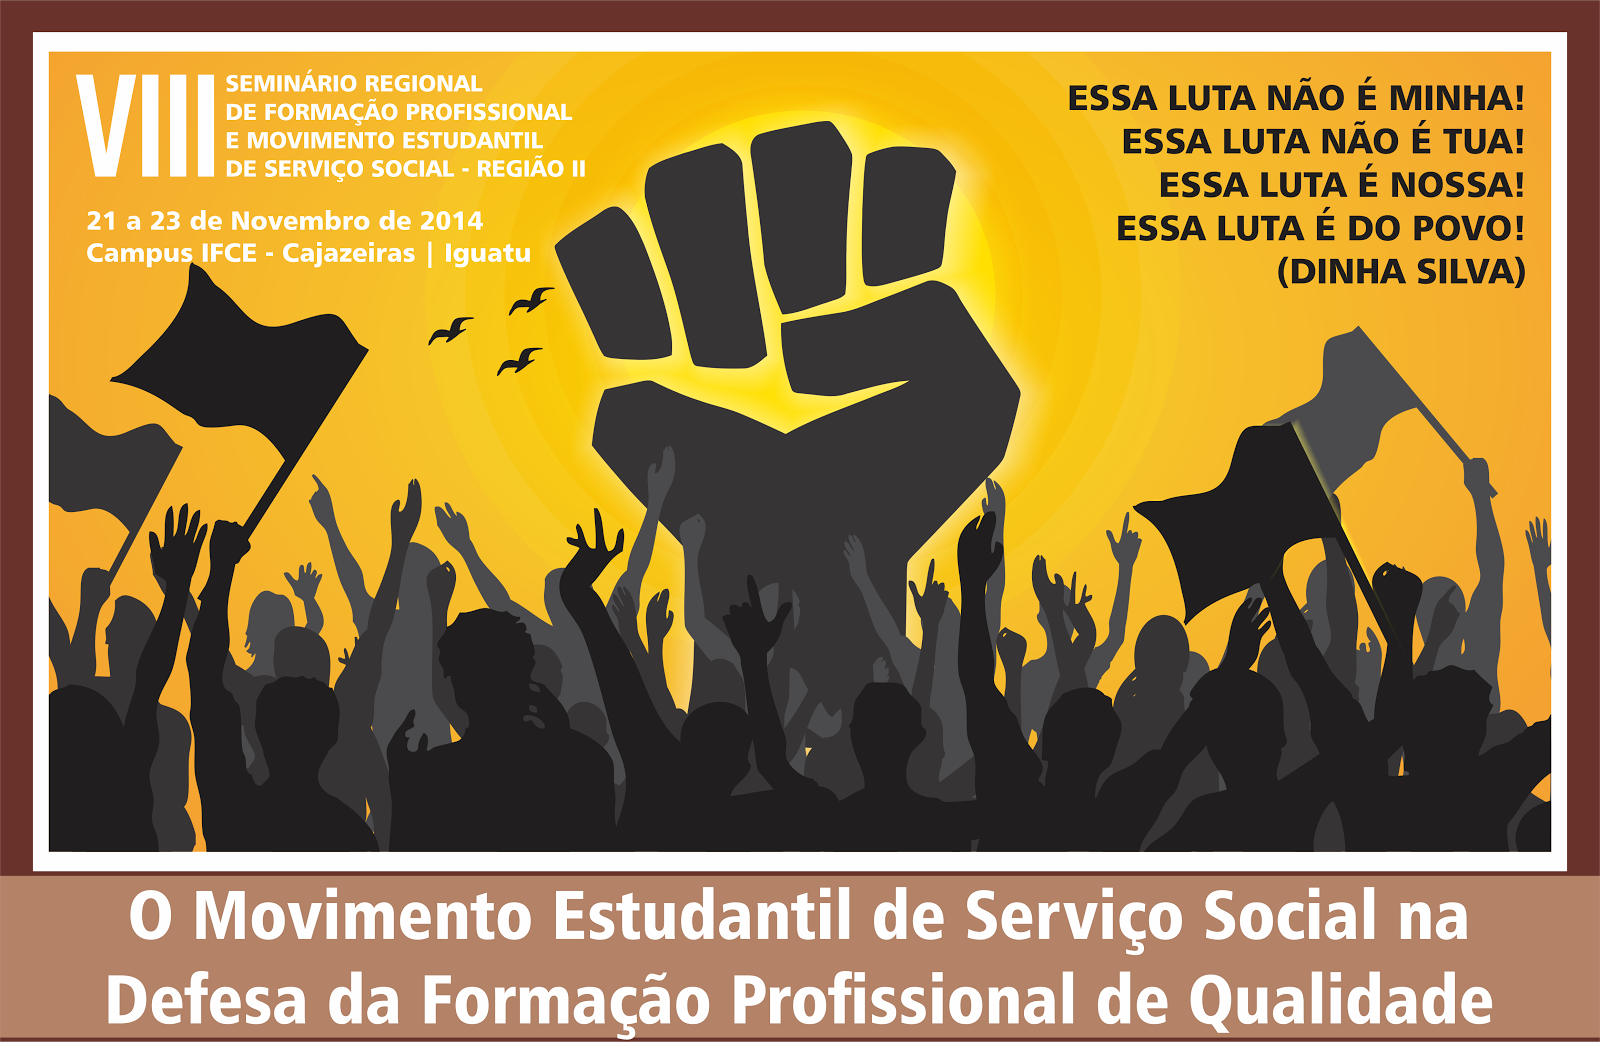 Seminário Regional de Formação Profissional e Movimento Estudantil de Serviço Social 2014- Região II